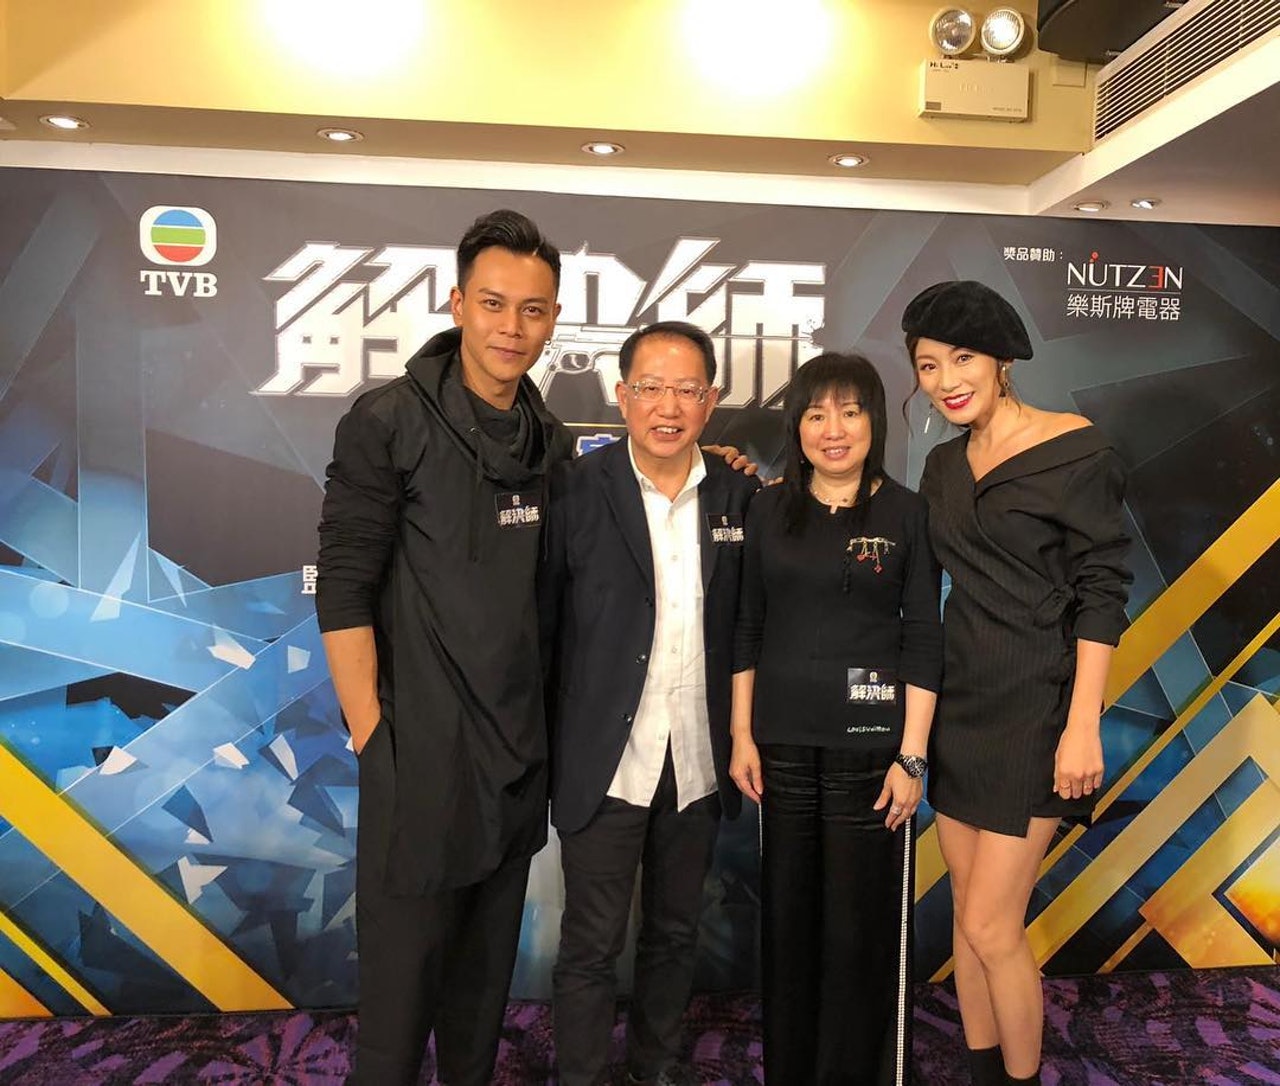 李天翔(左)在新剧《解决师》担任起第三男主角。